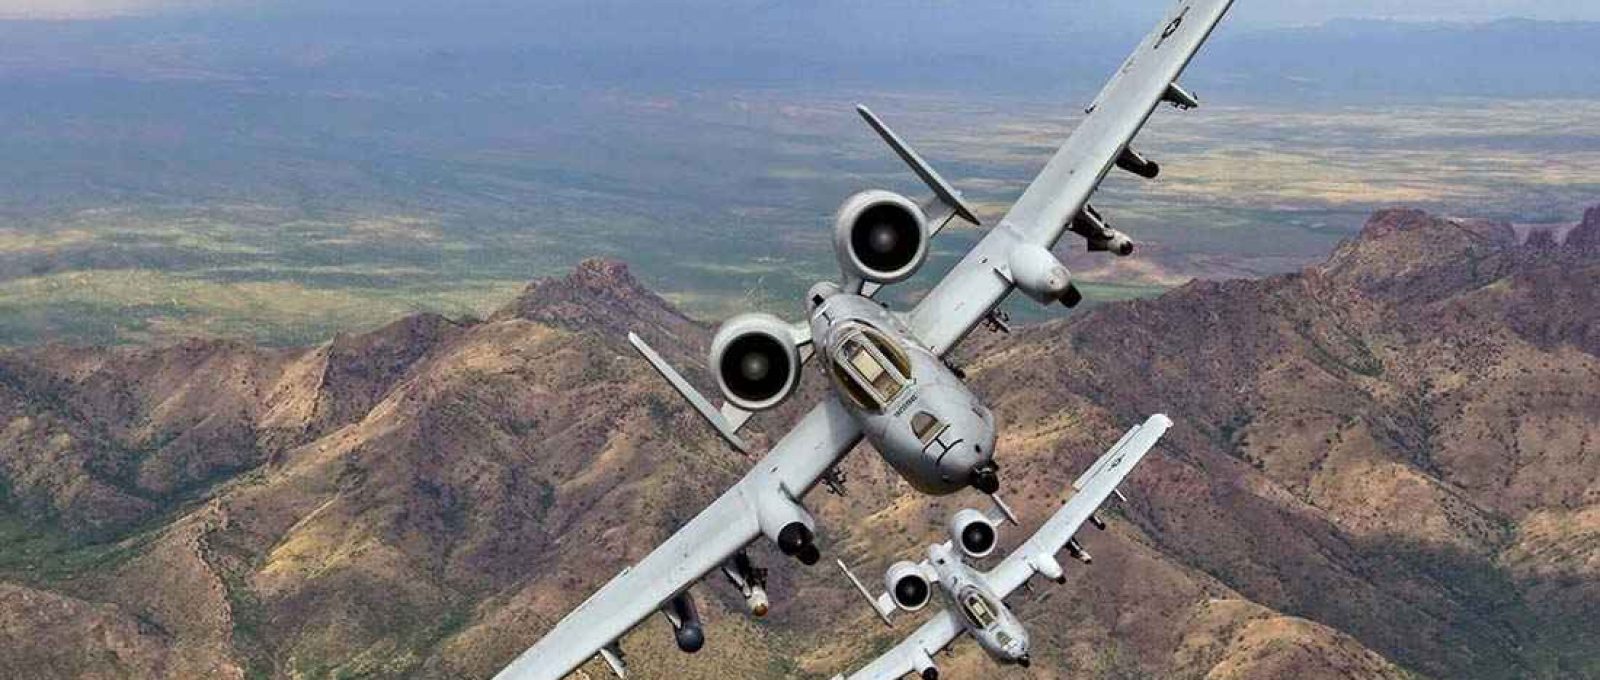 Dois A-10C Thunderbolt IIs voam em formação sobre o sul do Arizona, em 29 de abril de 2019 (Betty R. Chevalier/USAF).